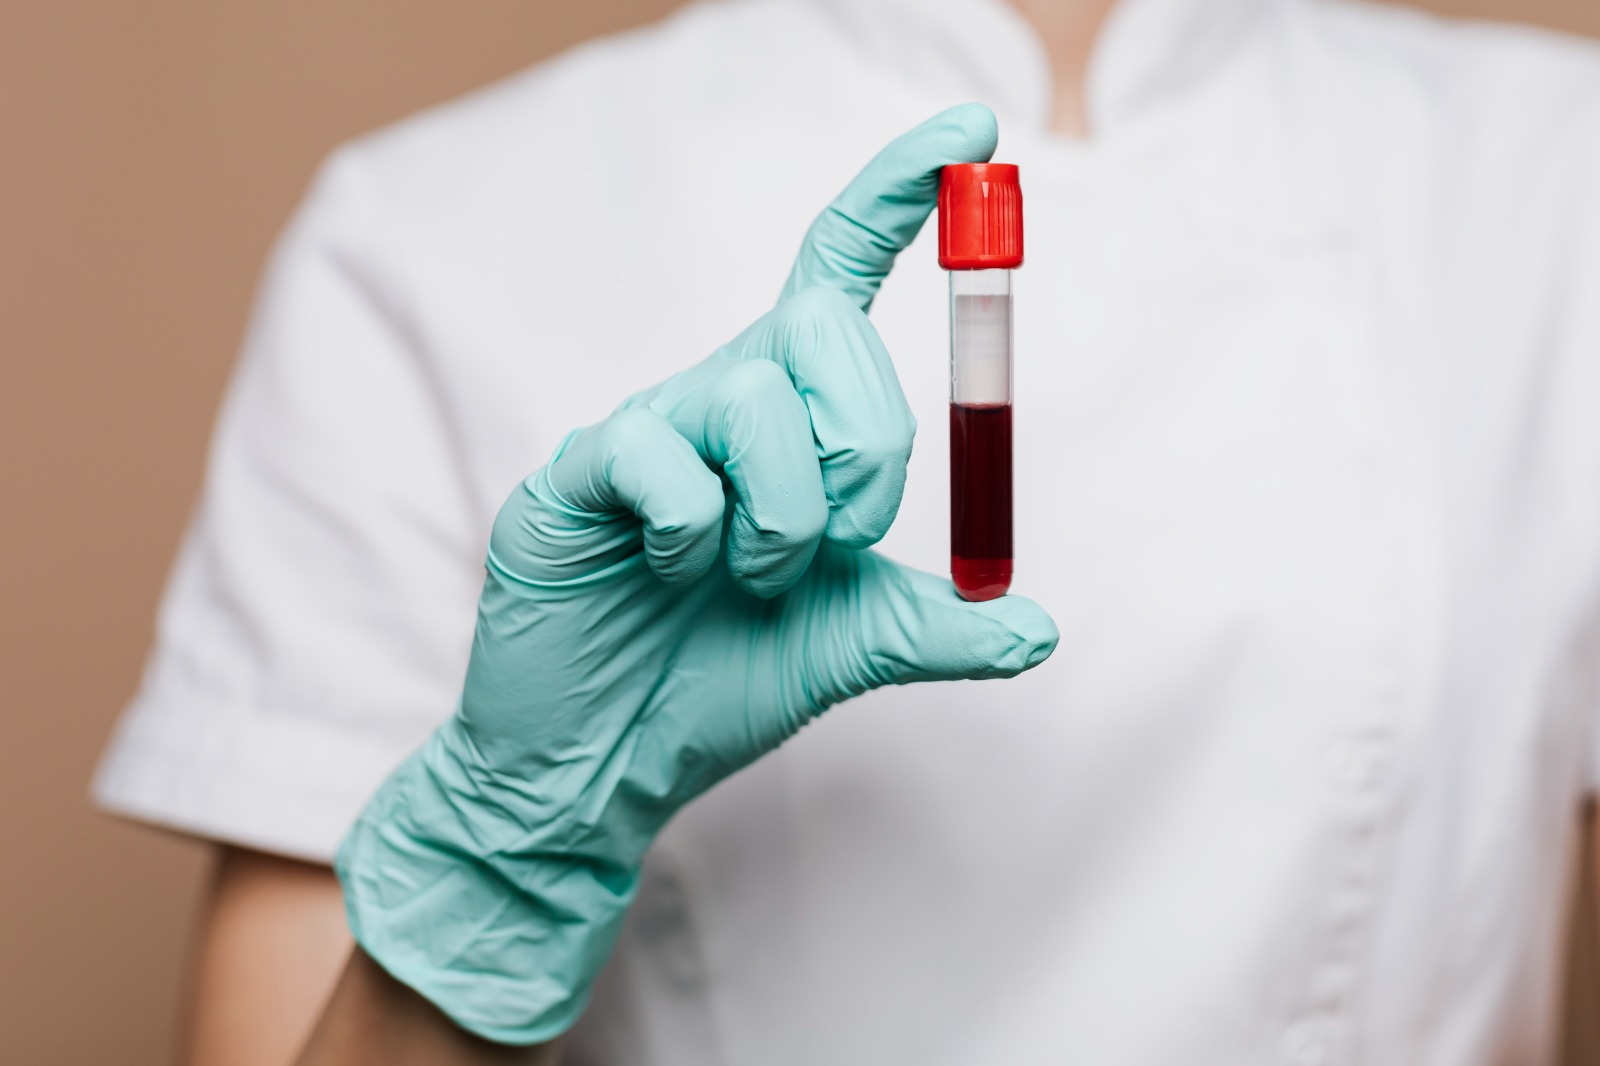 Descubra agora os 6 exames de sangue que detectam a inflamação!